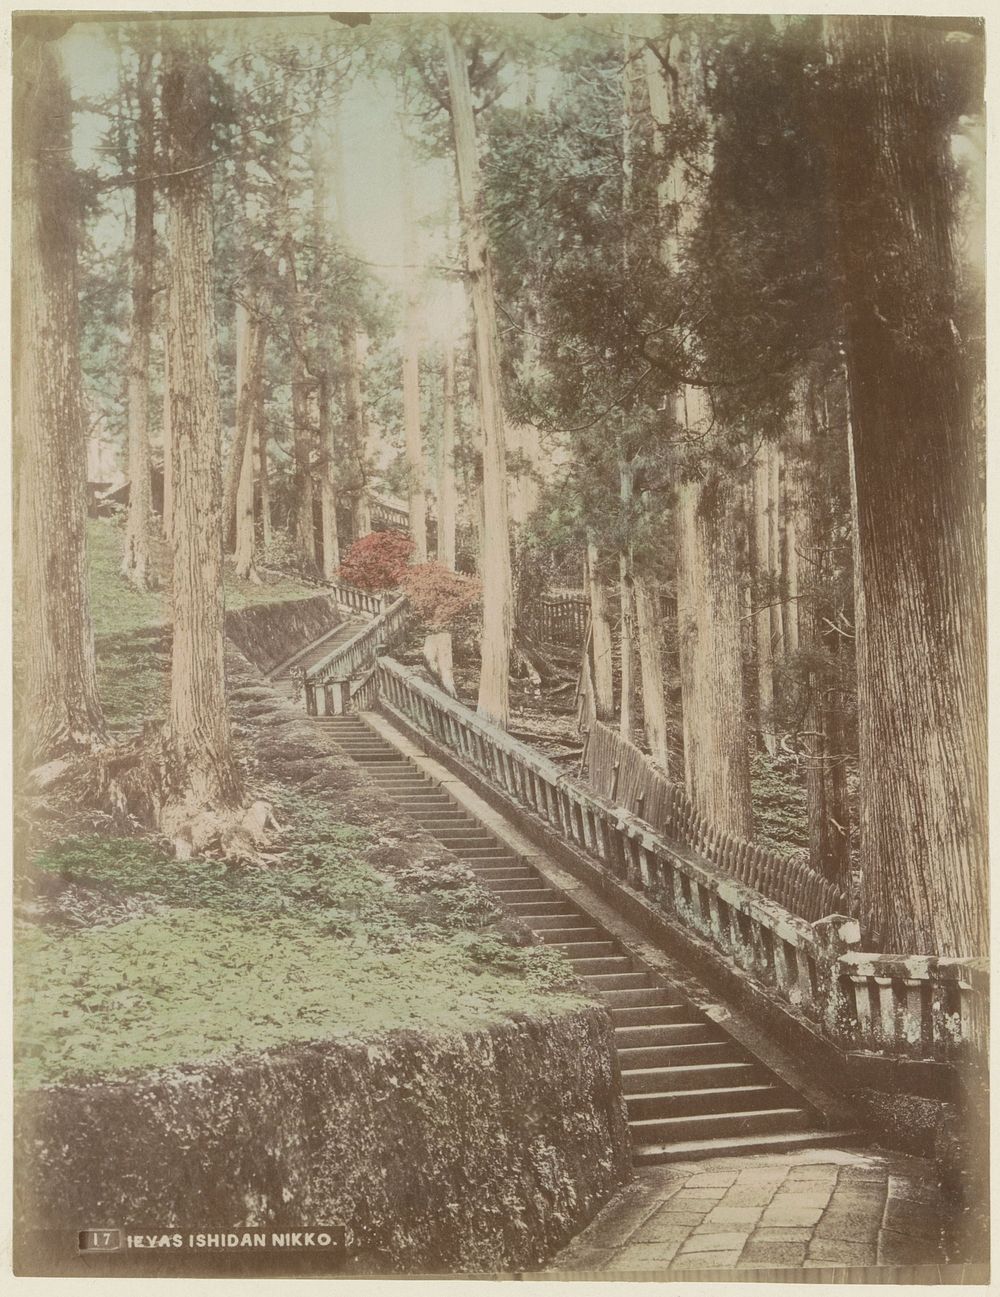 Houten trap in een bos, vermoedelijk bij een tempel in Nikko (c. 1870 - c. 1900) by anonymous